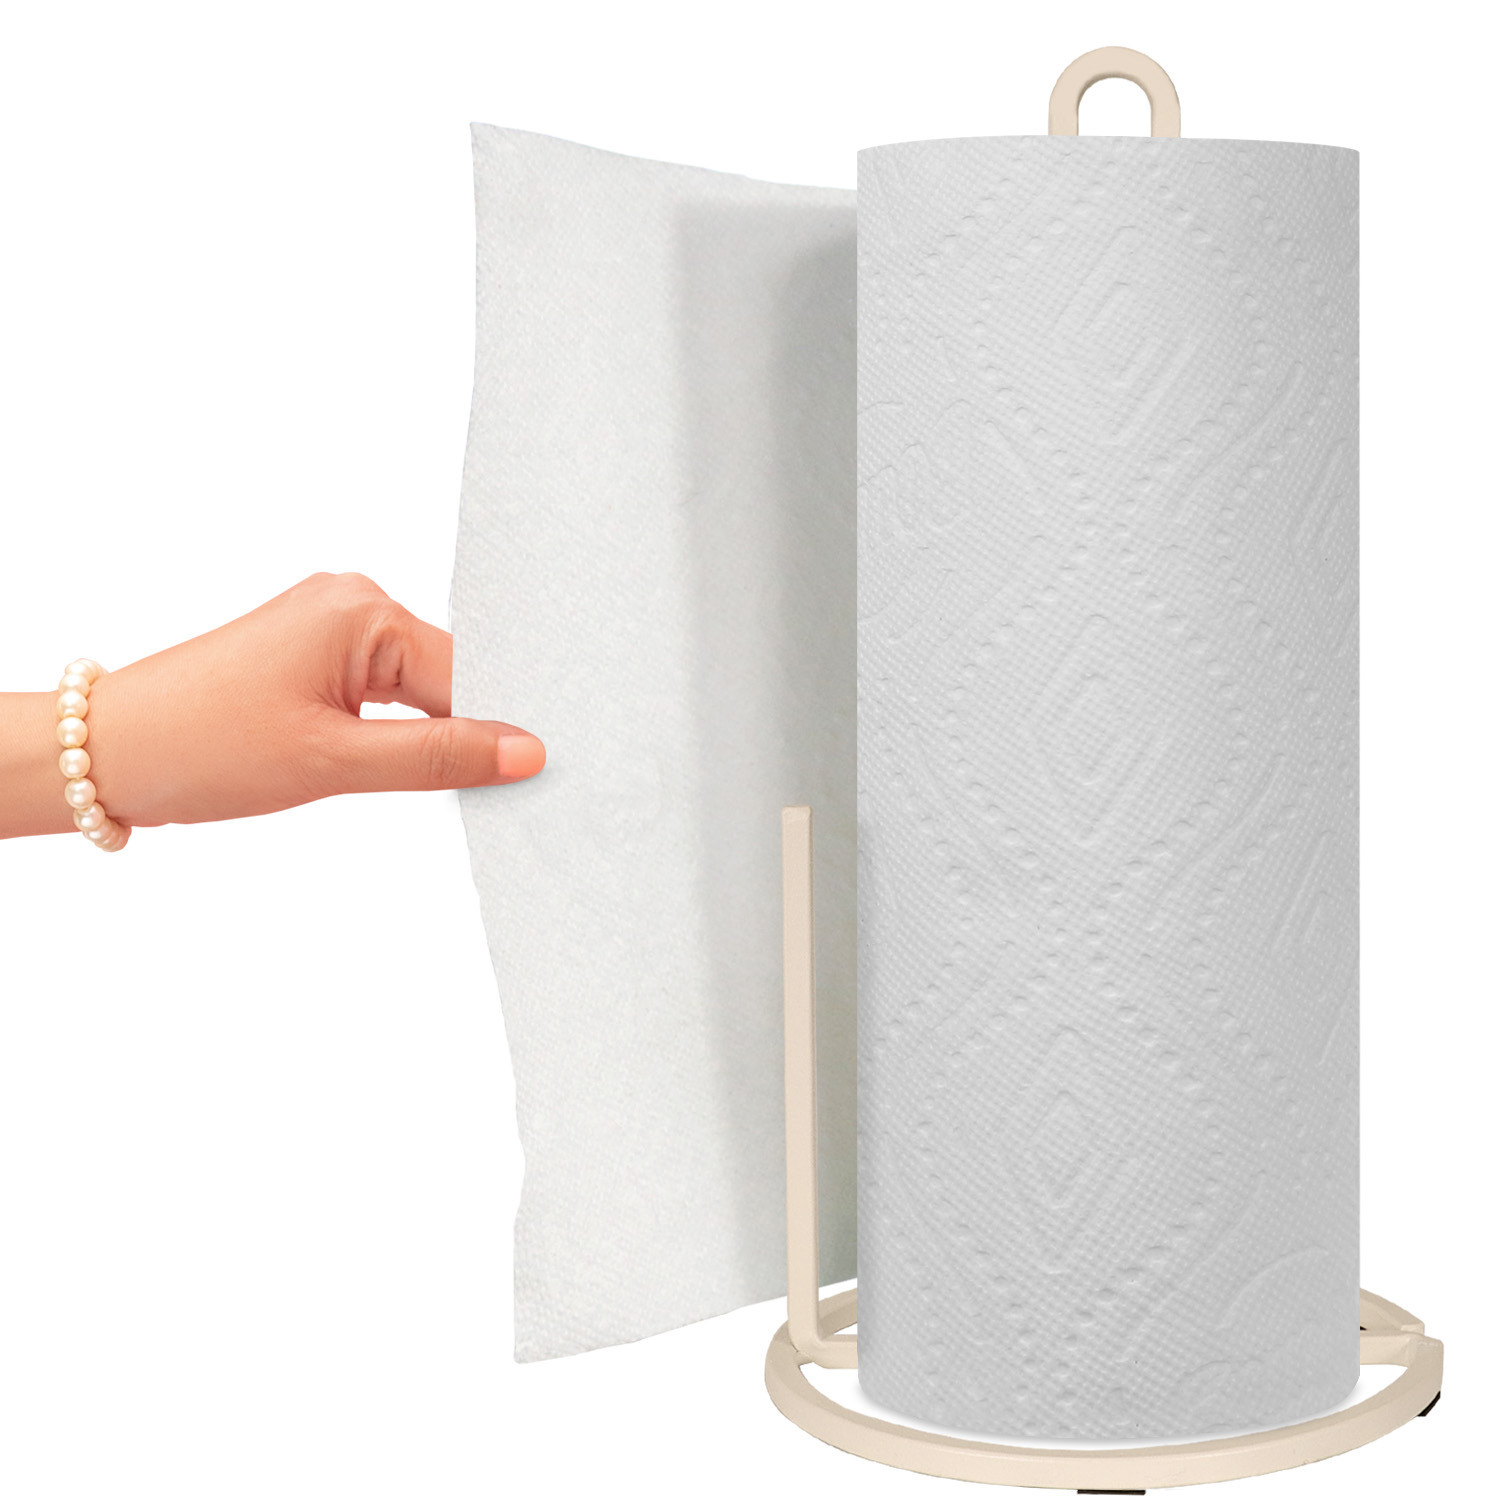 White square modern paper towel holder 